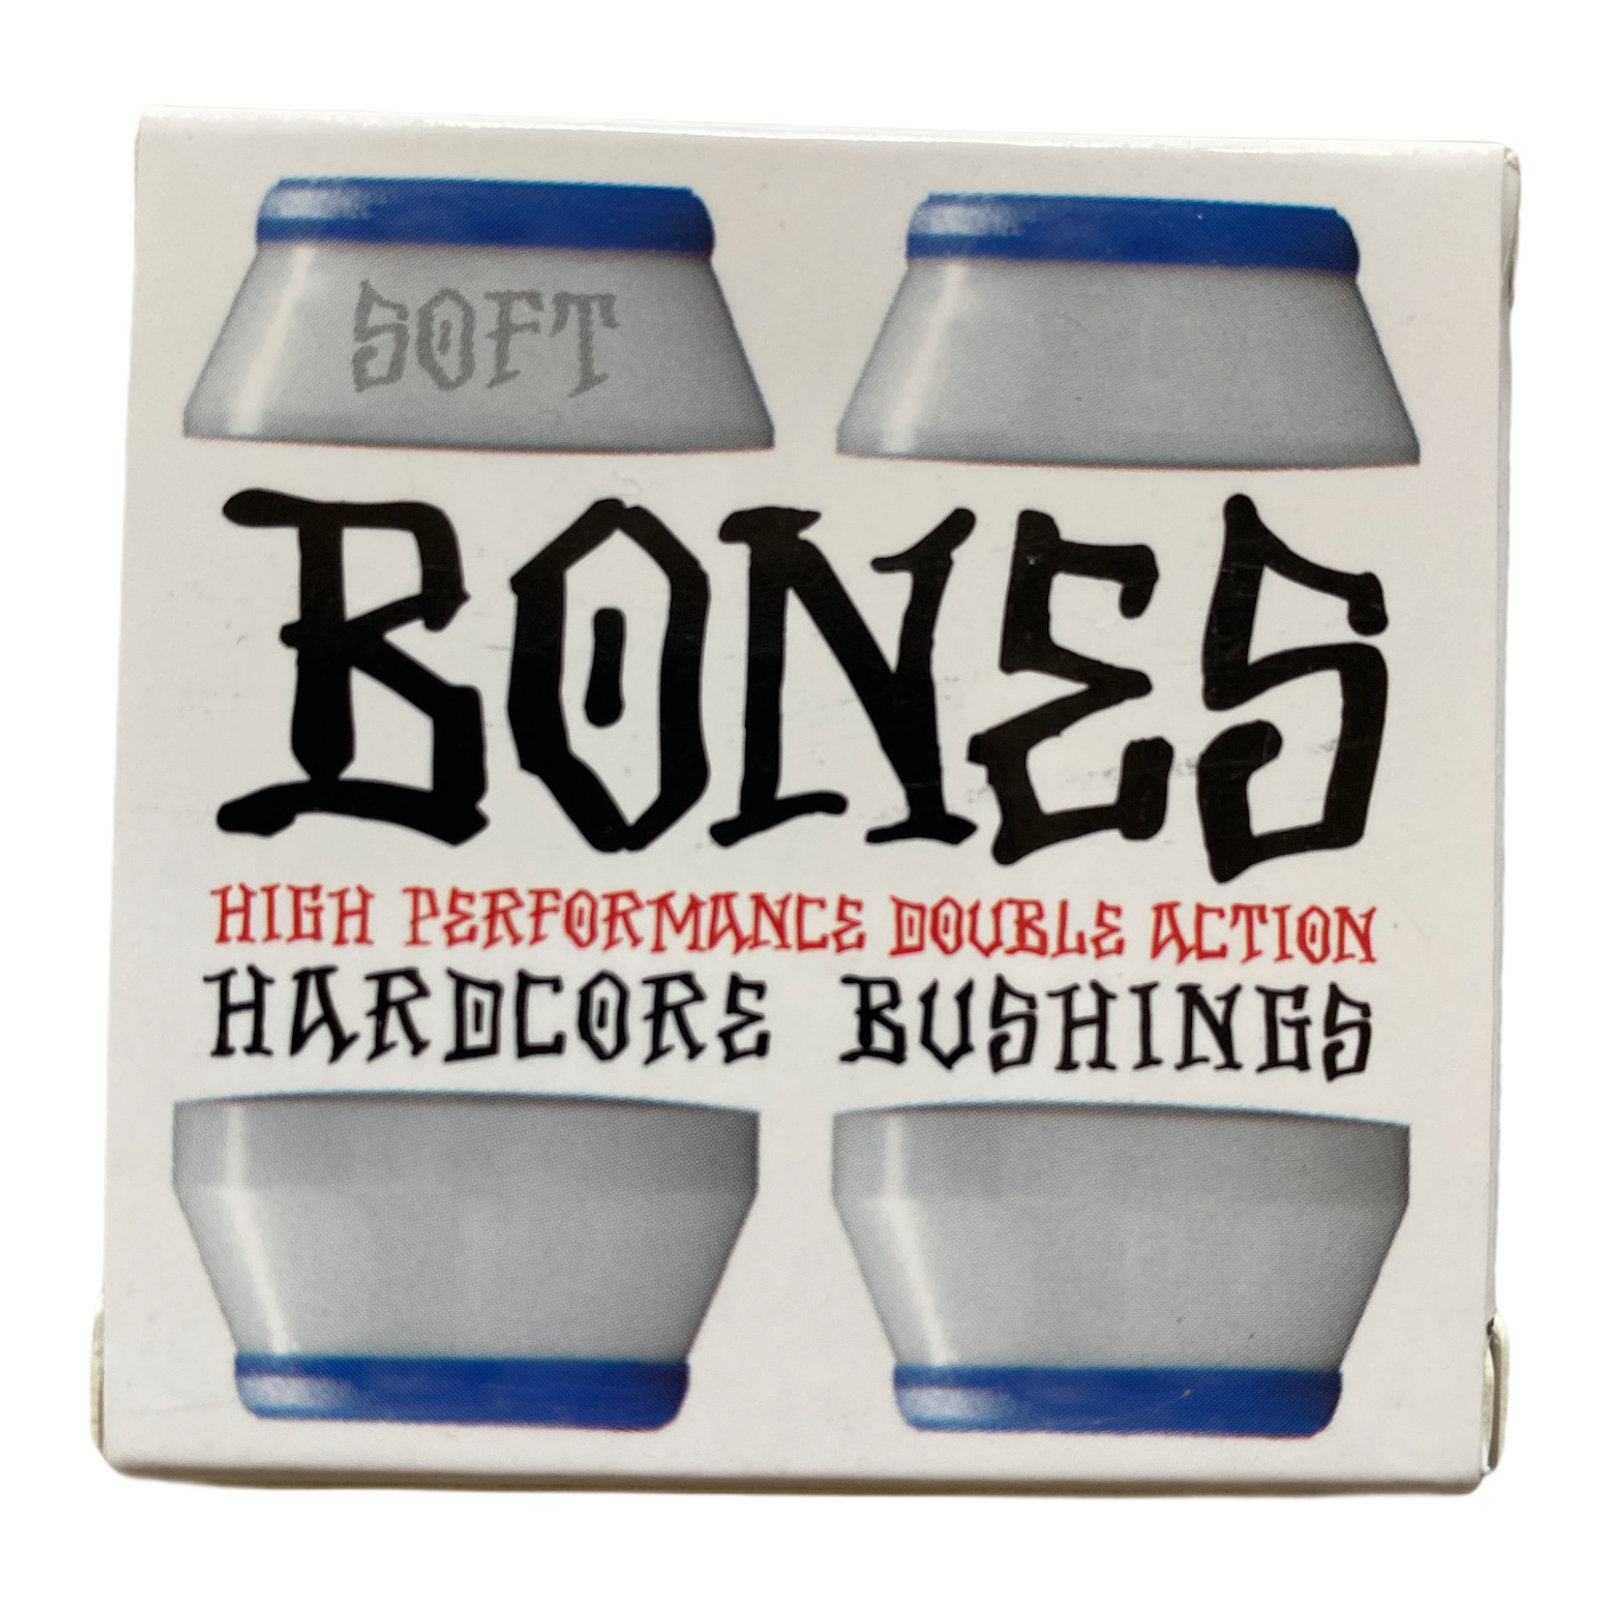 Bones Bushings- Soft- Blue